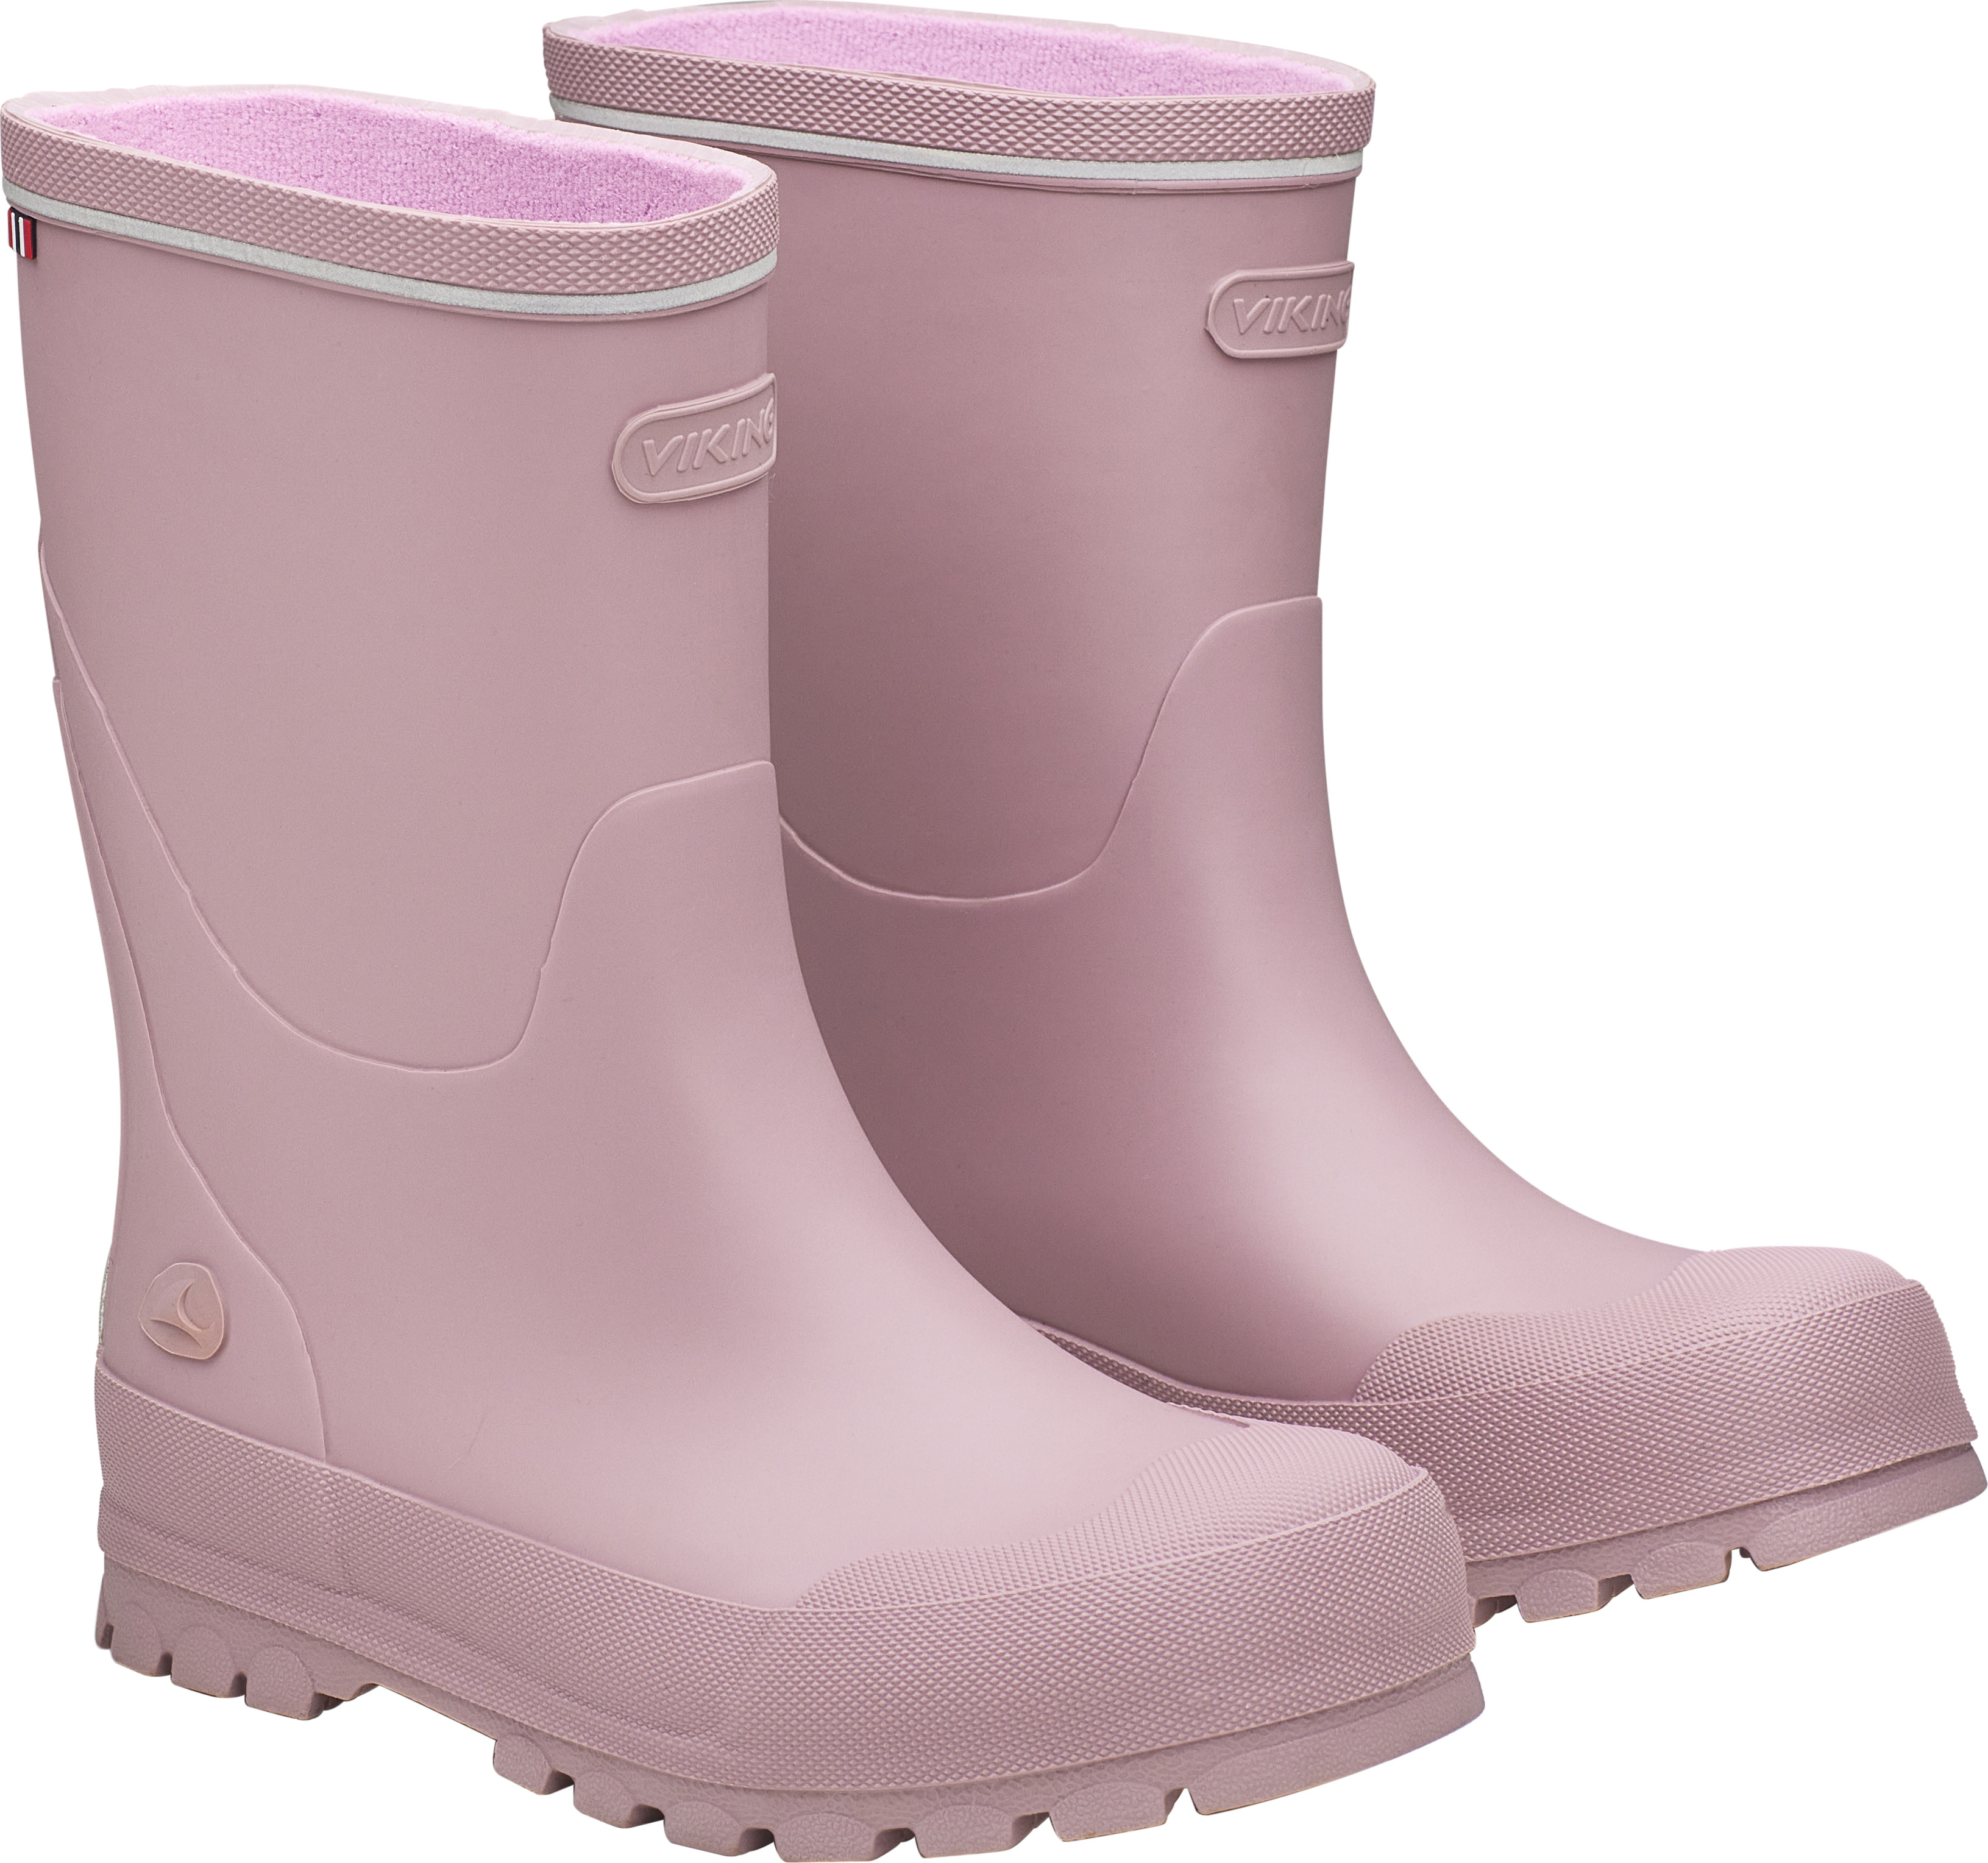 Kids' Rain Boots | Buy Kids' Rain Boots here | Outnorth